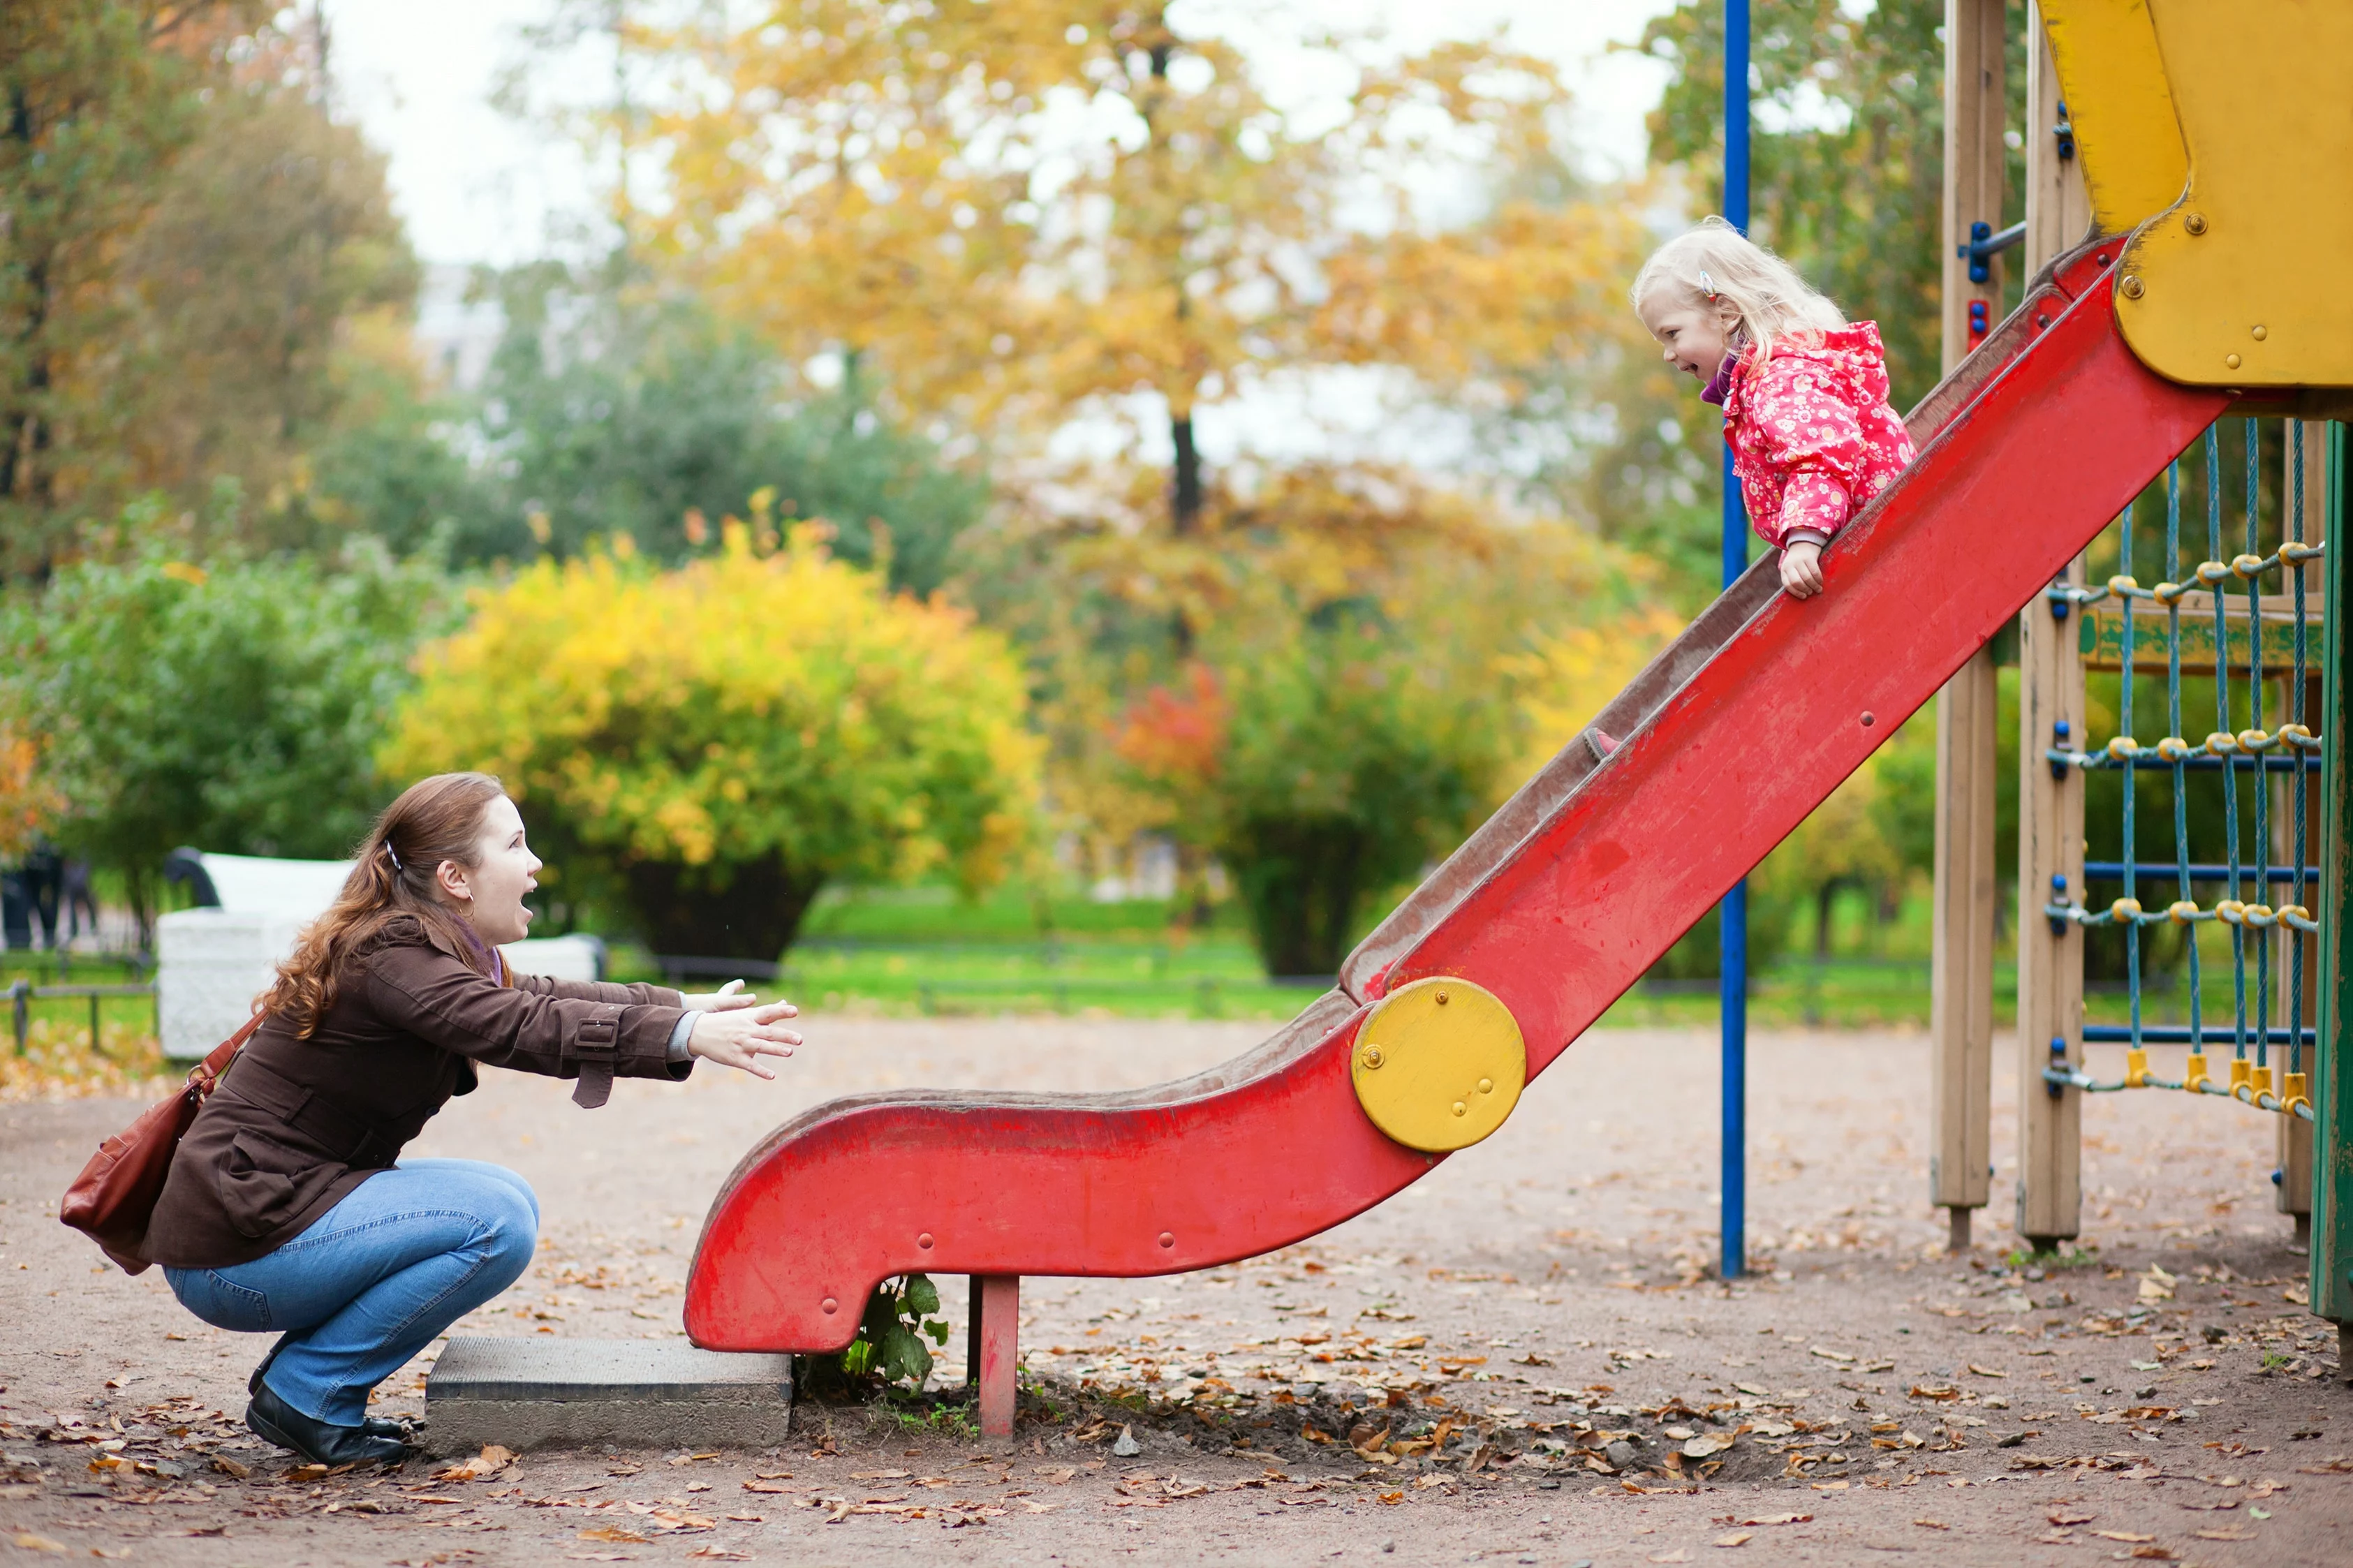 Enthousiaste moeder met kind bij een speeltuin. Kindje gaat van een rode glijbaan en lacht.